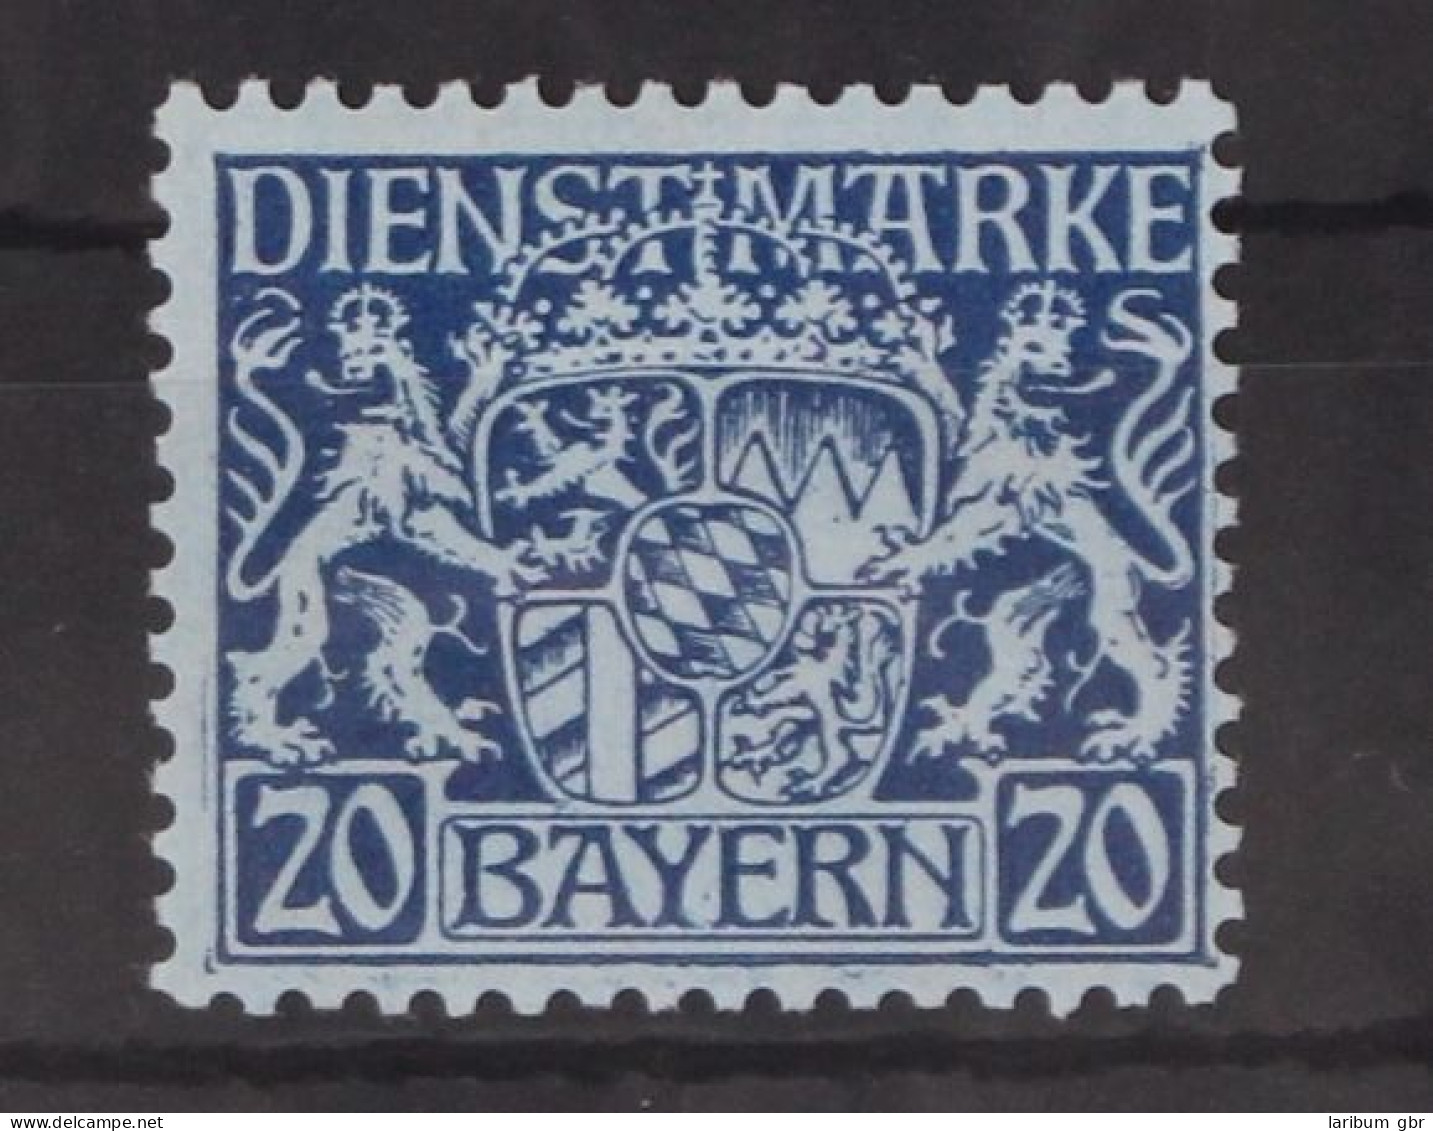 Bayern Dienstmarken 20 Postfrisch #GM098 - Nuevos